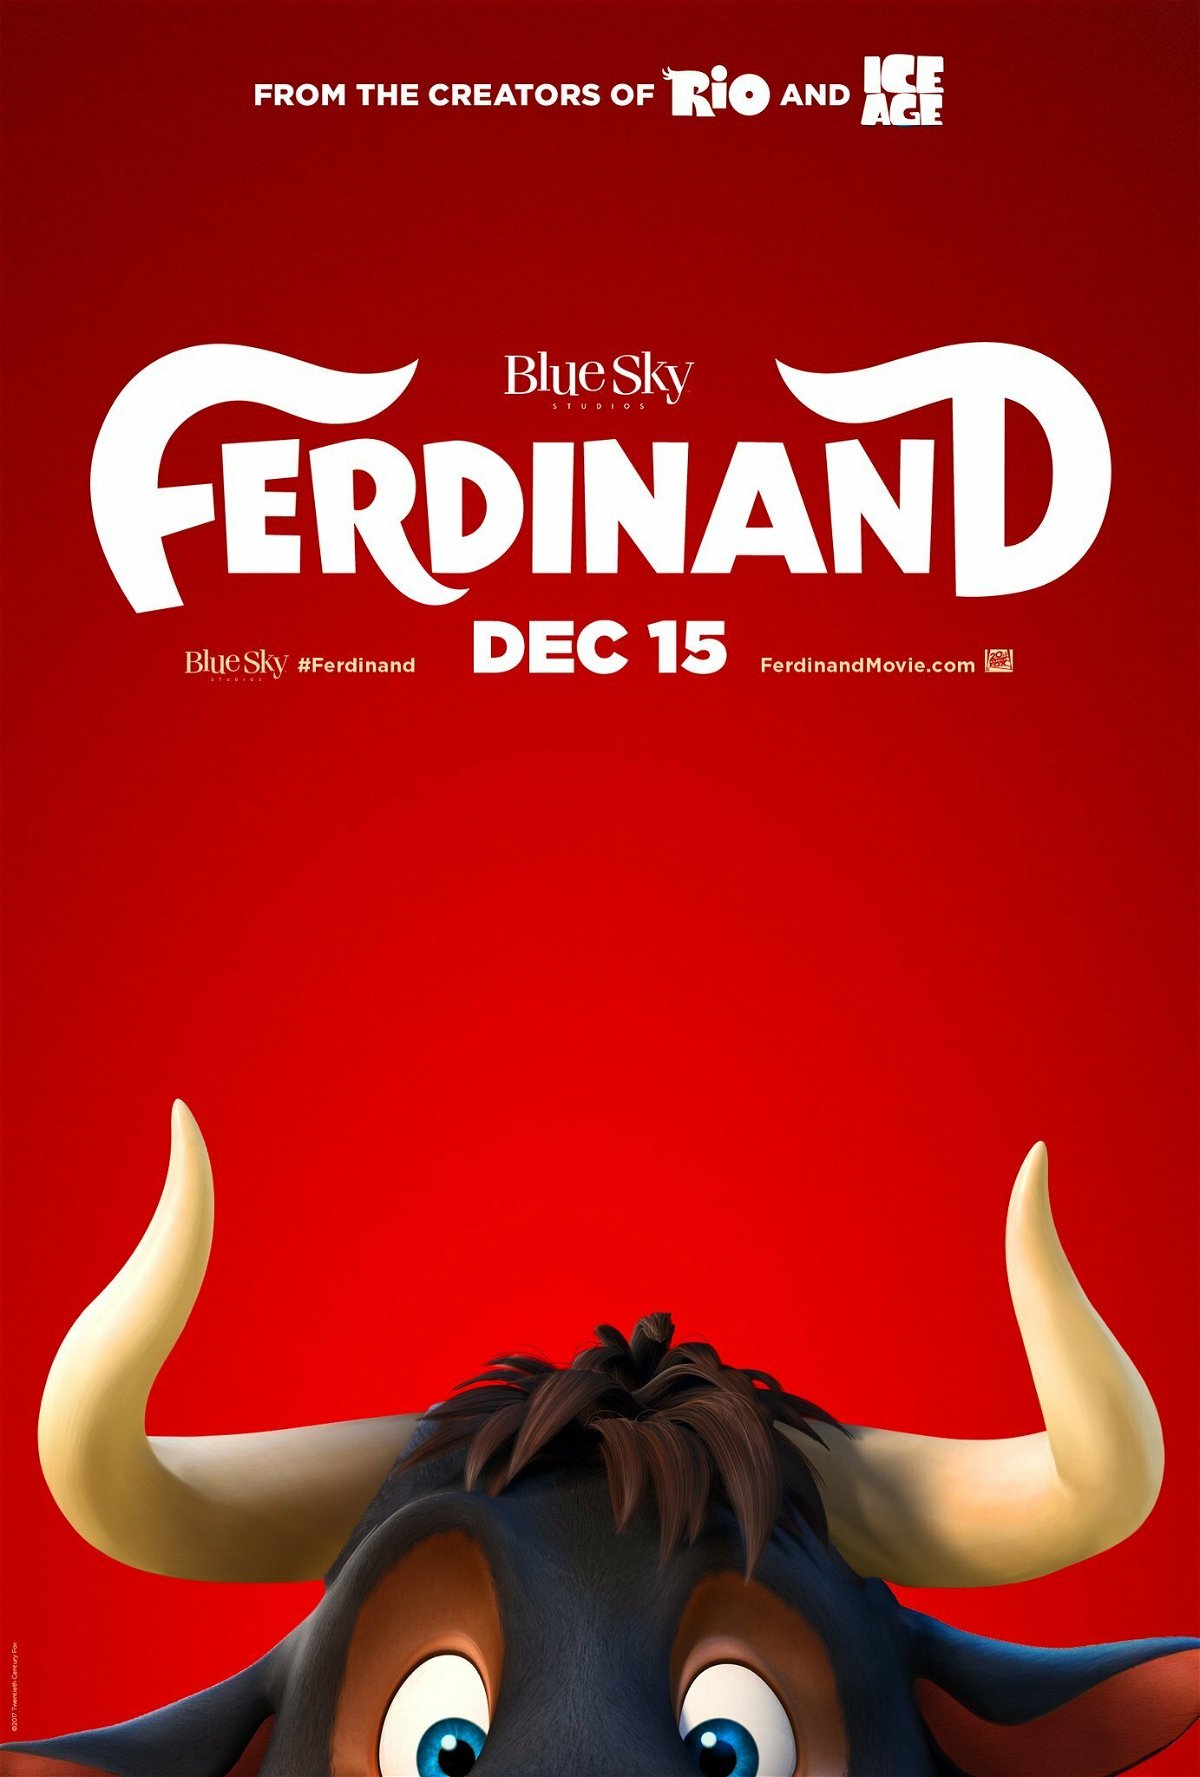 La locandina di Ferdinand, in arrivo nei cinema a dicembre 2017